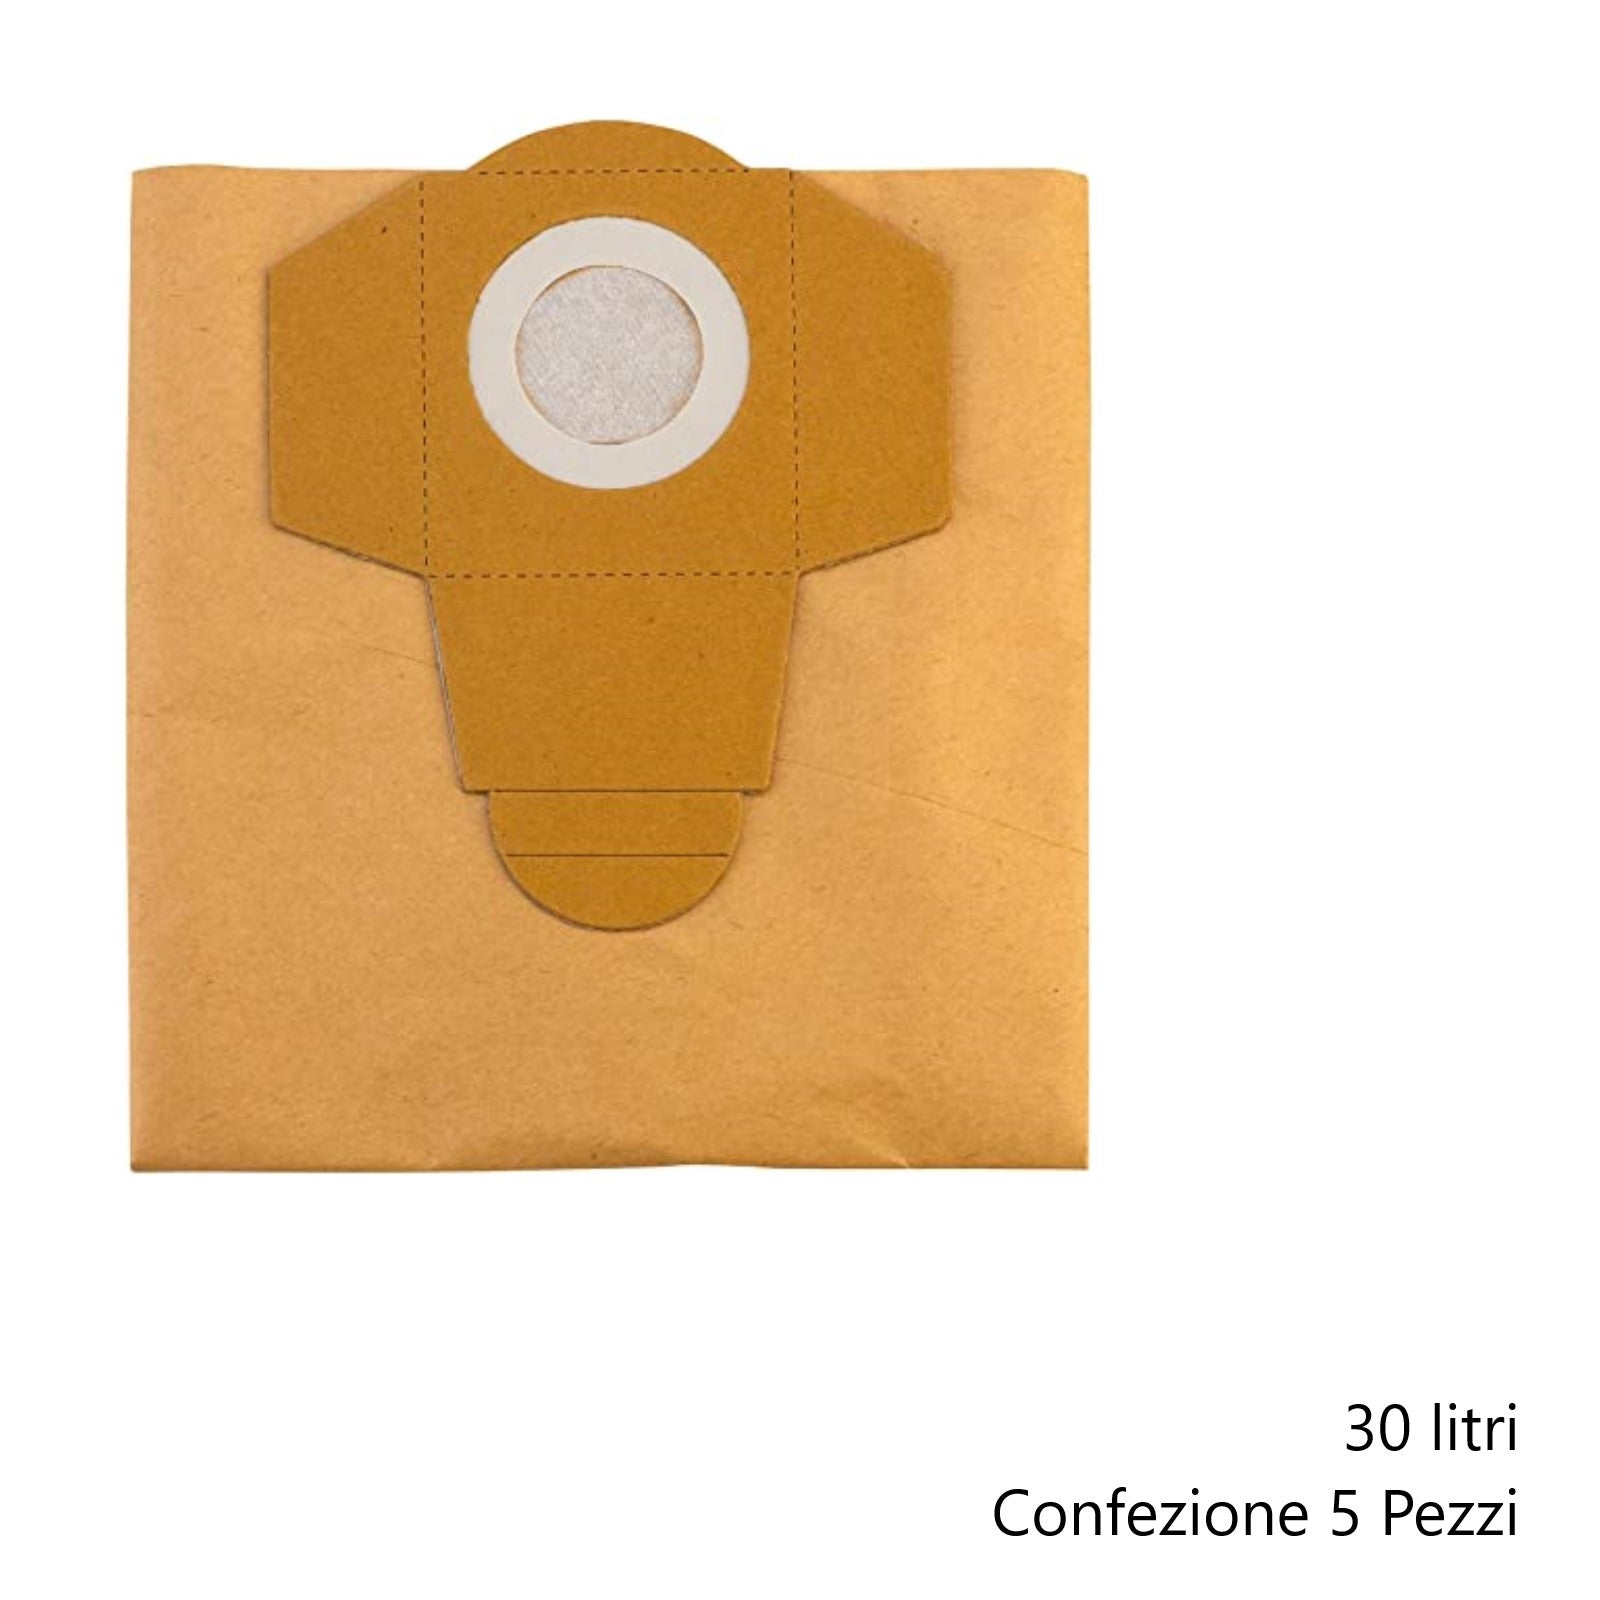 10 pz/lotto sacchetti aspirapolvere sacchetto filtro polvere di carta per  Hitachi CV110 5100 5300 5500